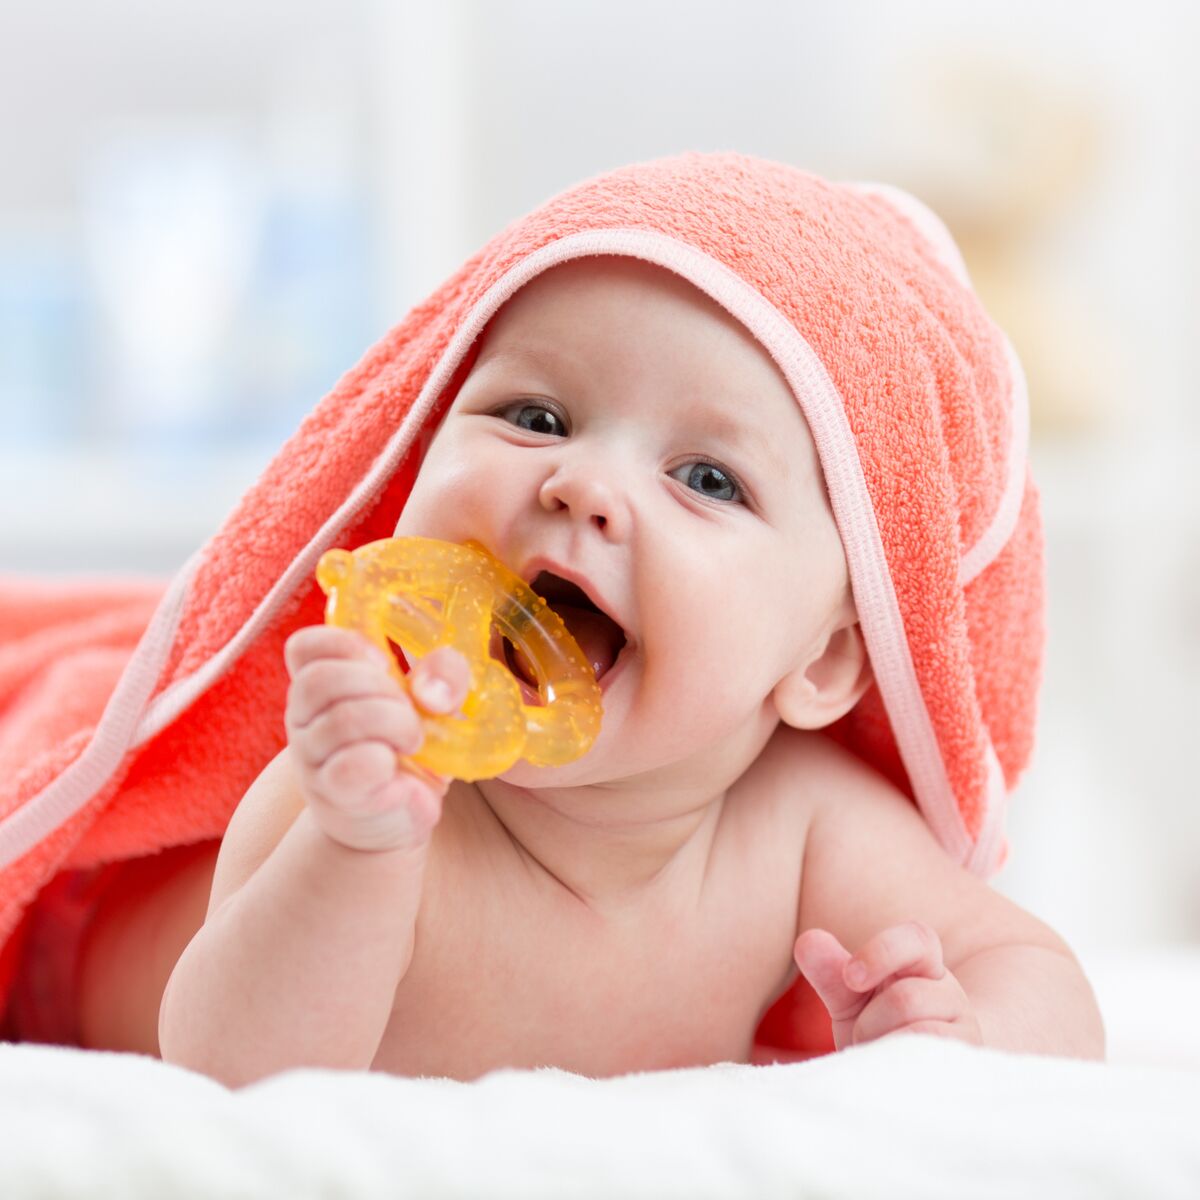 Les dents de bébé : reconnaître et soulager la poussée dentaire